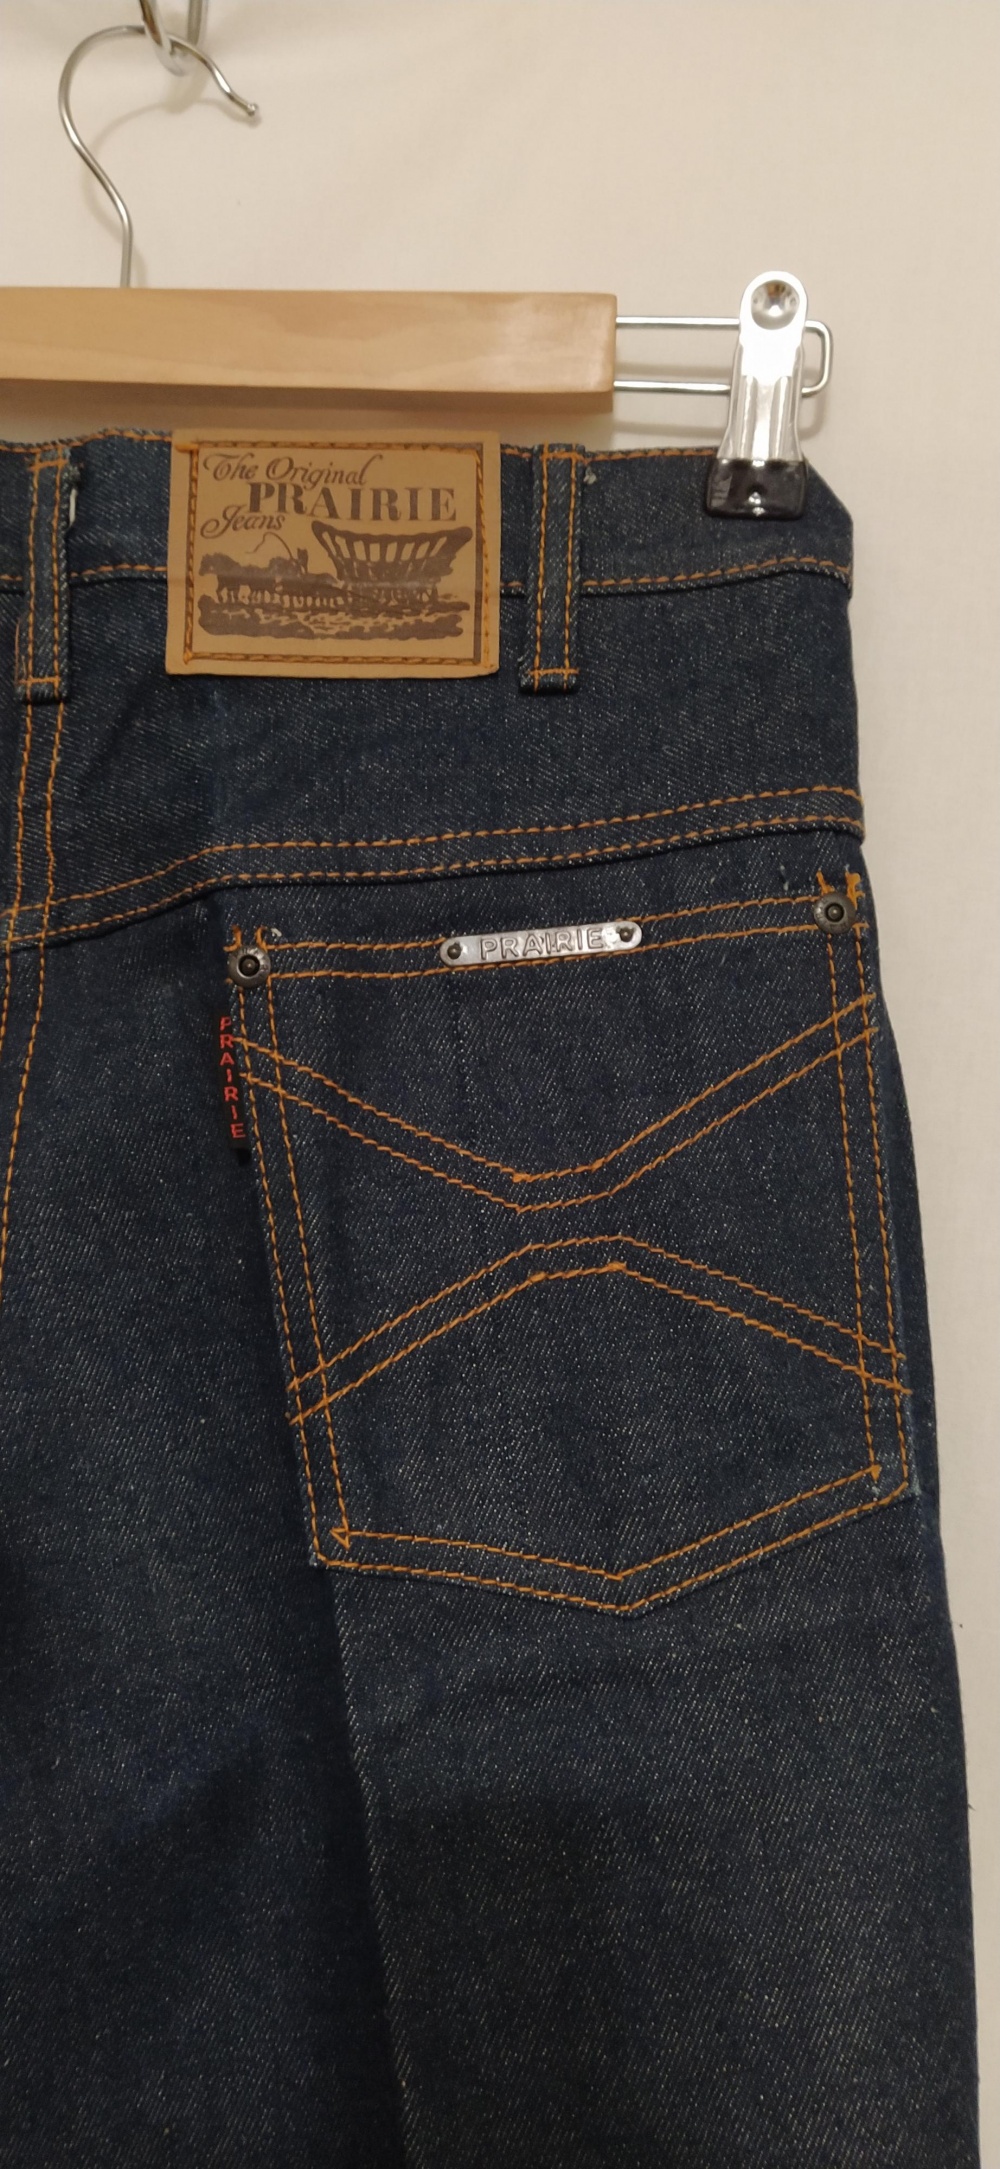 Джинсы The Original PRAIRIE Jeans, М